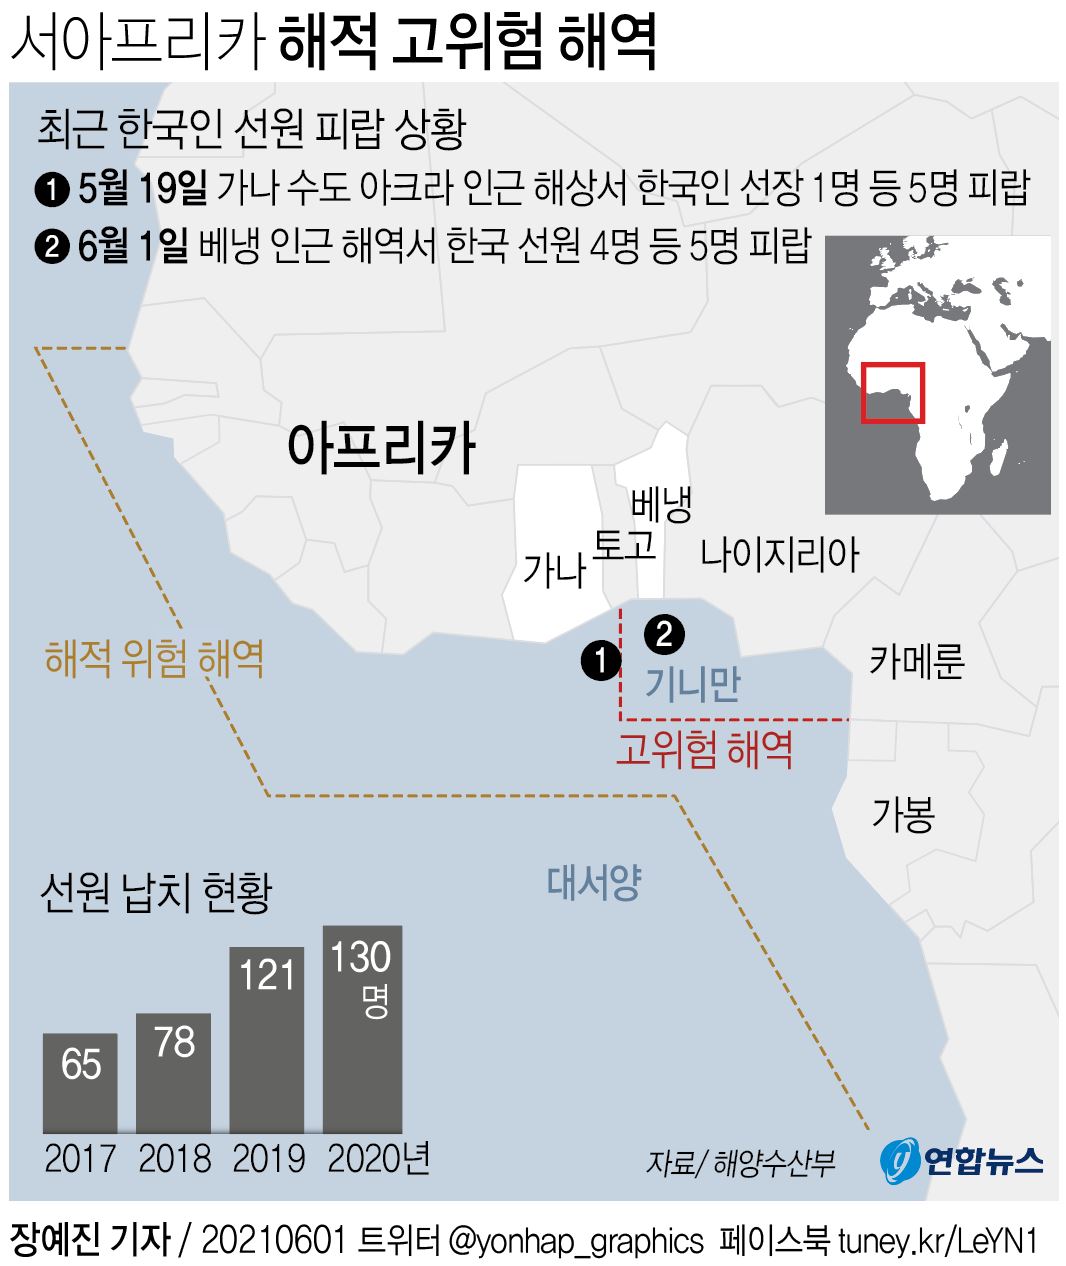 西アフリカのギニア湾は海賊が頻繁に出没する。韓国当局は拉致などの危険性が特に高いエリアを「海賊高危険海域」、その周辺を「海賊危険海域」に指定している。〈１〉は５月１９日、〈２〉は５月３１日に韓国人が拉致された地点＝（聯合ニュース）